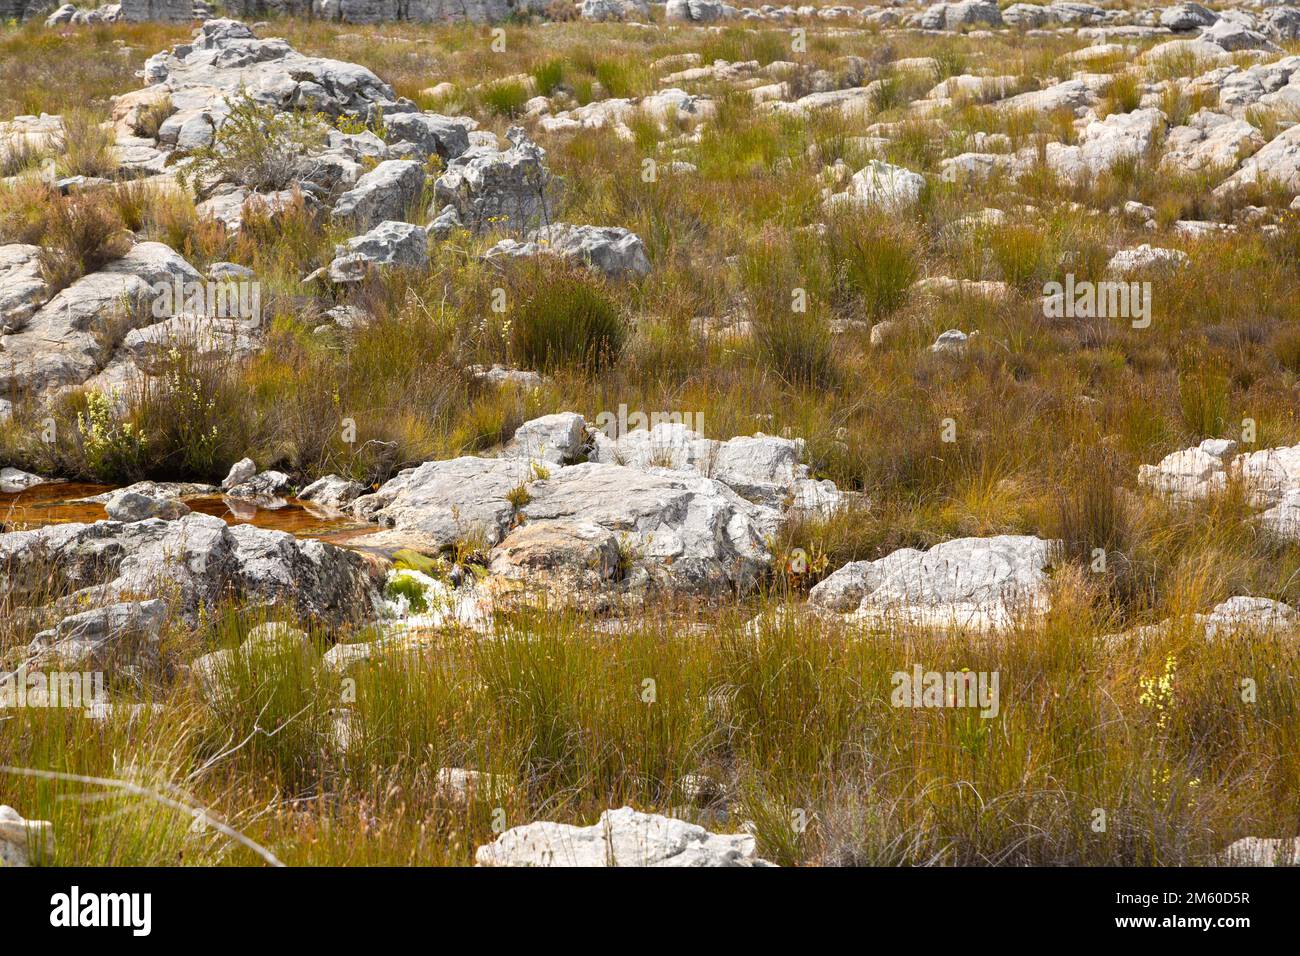 Paysage près de Porterville dans le Cap occidental de l'Afrique du Sud avec de l'eau, des buissons verts et des rochers Banque D'Images